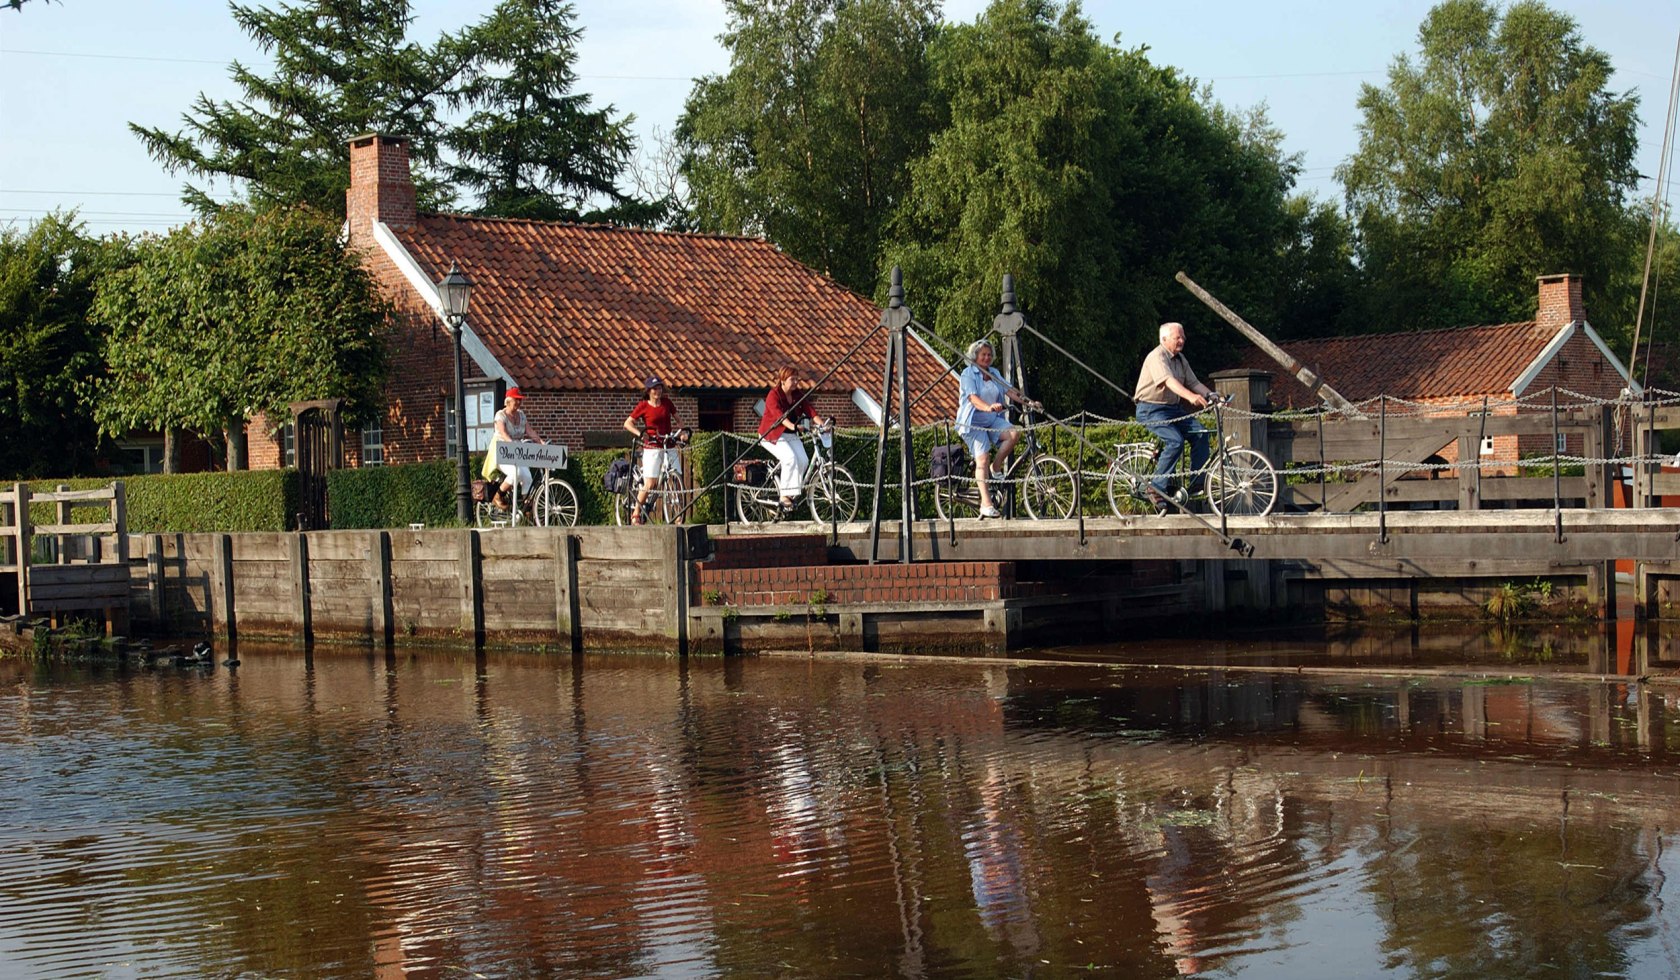 Radfahrer auf einer Brücker vor der Von-Velen-Anlage. Diese benannt nach dem Gründer der Stadt, Dietrich von Velen., © Emsland Touristik GmbH